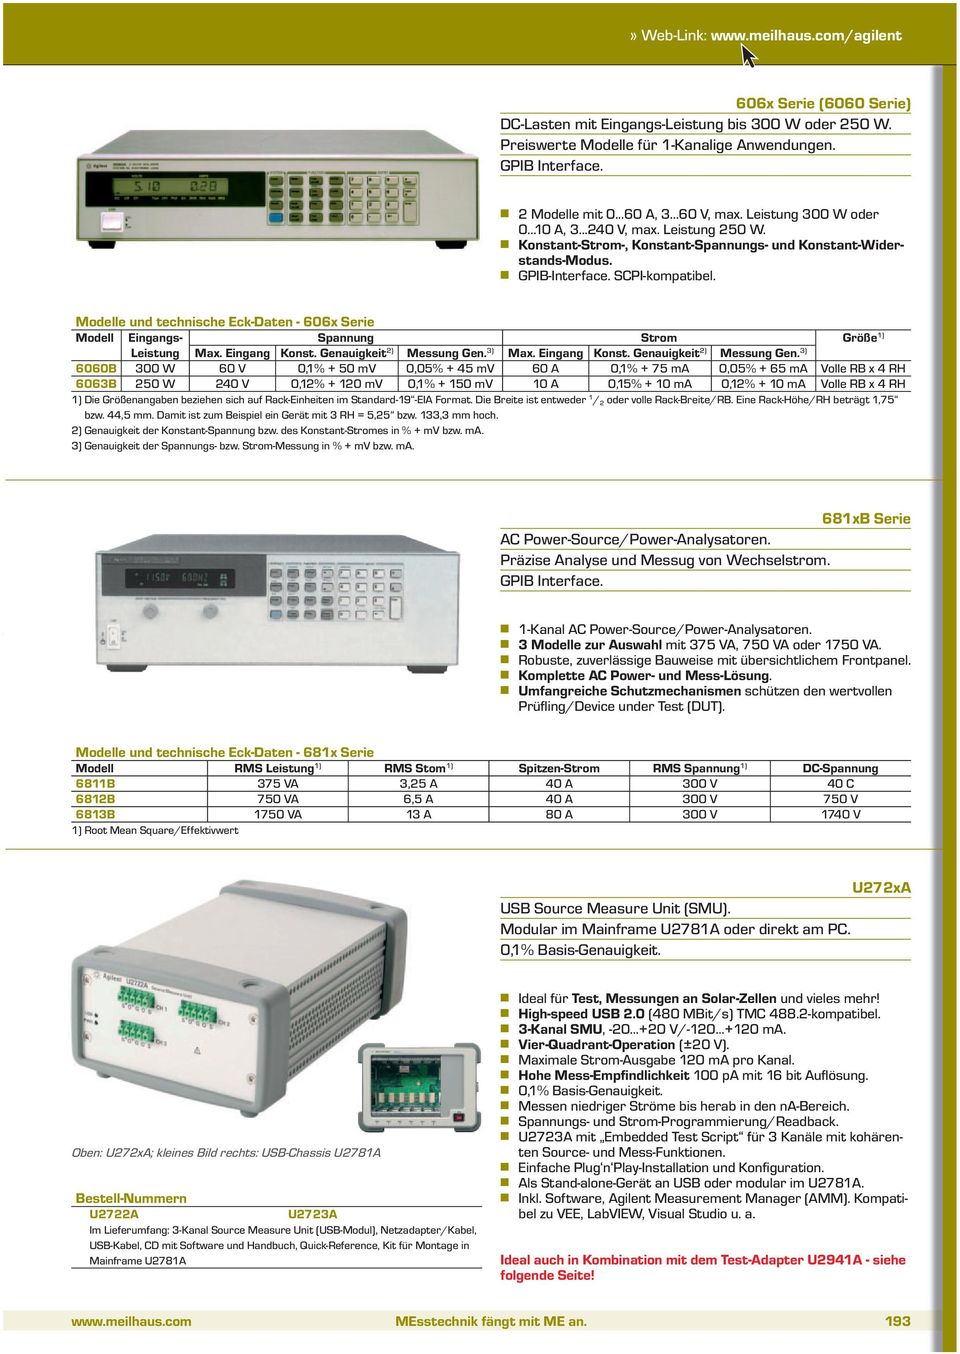 Modelle und technische Eck-Daten - 606x Serie Modell Eingangs- Spannung Strom Größe 1) Leistung Max. Eingang Konst. Genauigkeit 2) Messung Gen.